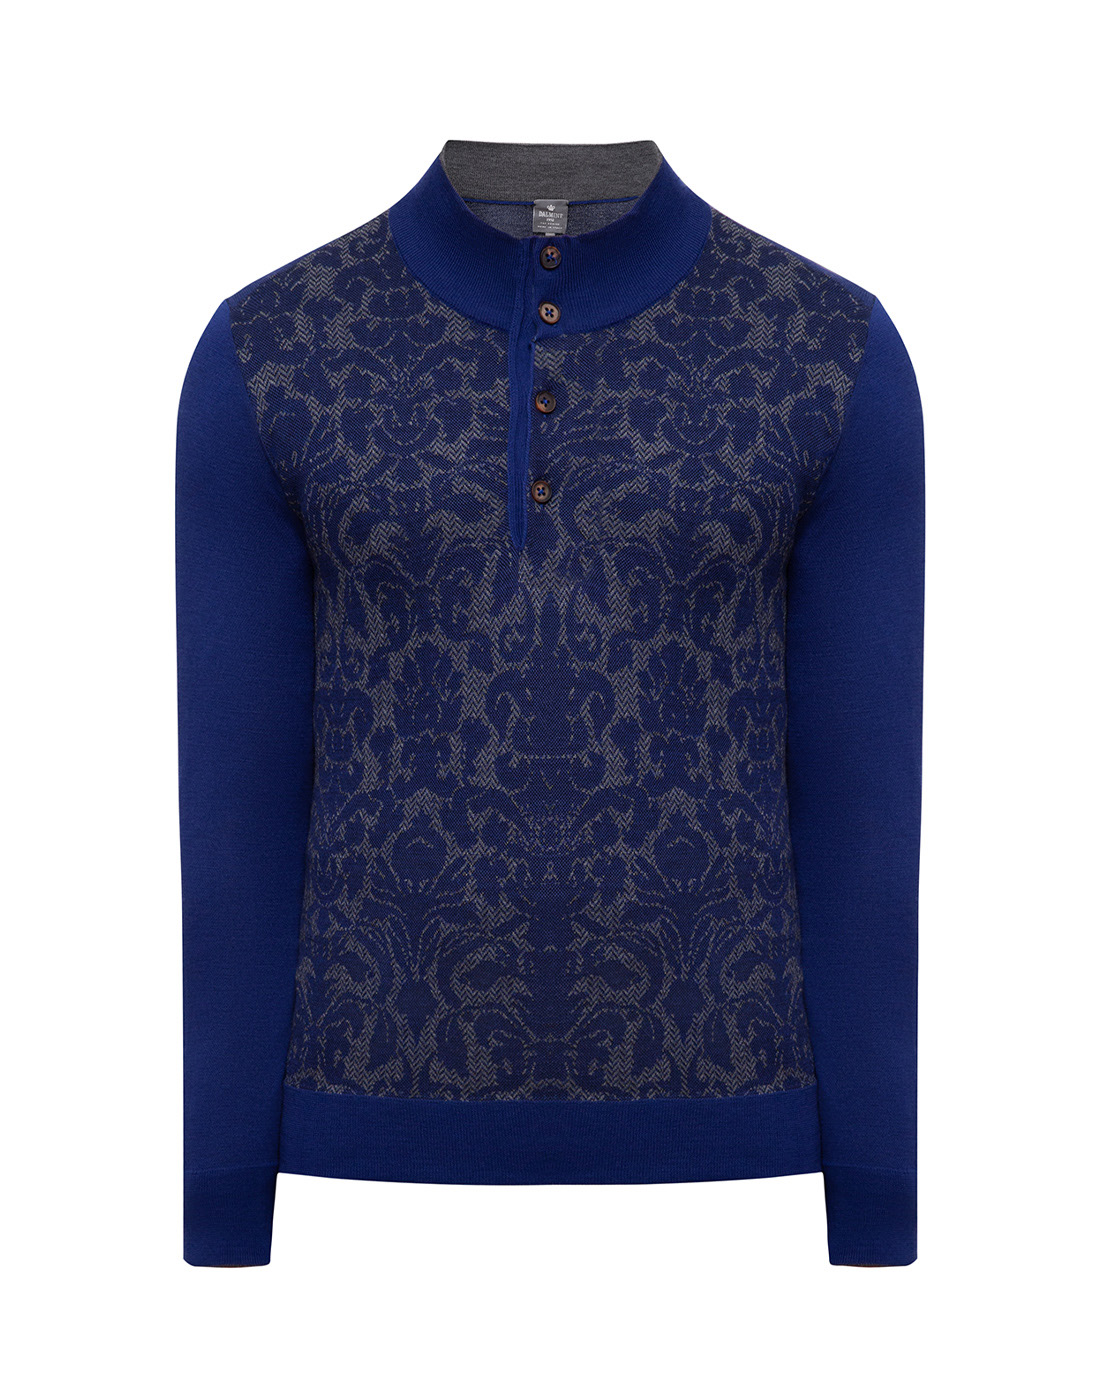 Мужской синий шерстяной свитер Dalmine S820028-1